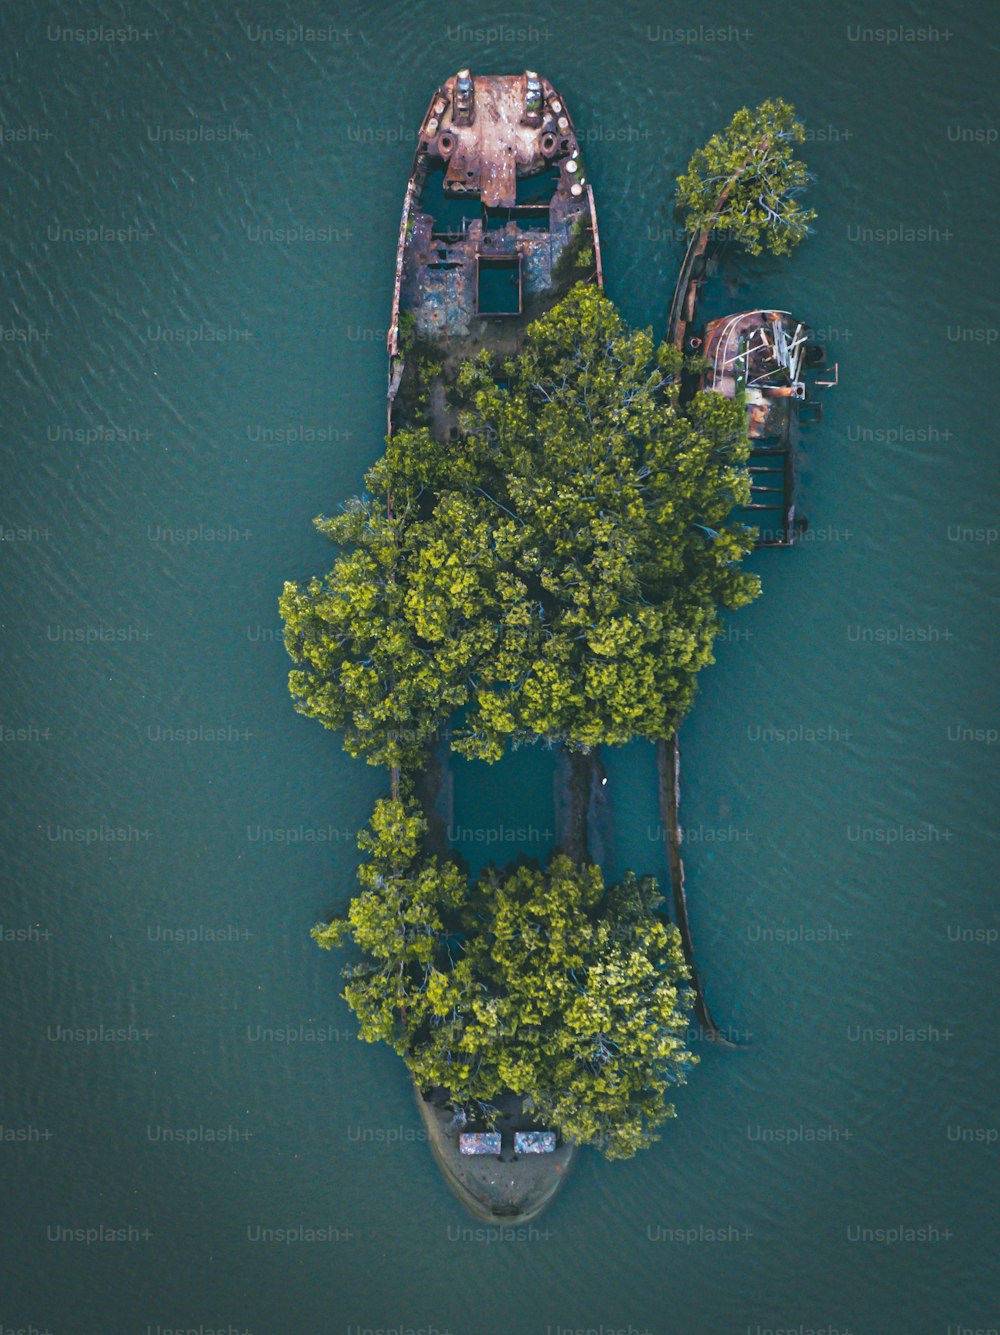 시드니 홈부시 베이(Homebush Bay)에 있는 111년 된 난파선(Floating Forest)에서 자라는 나무의 조감도